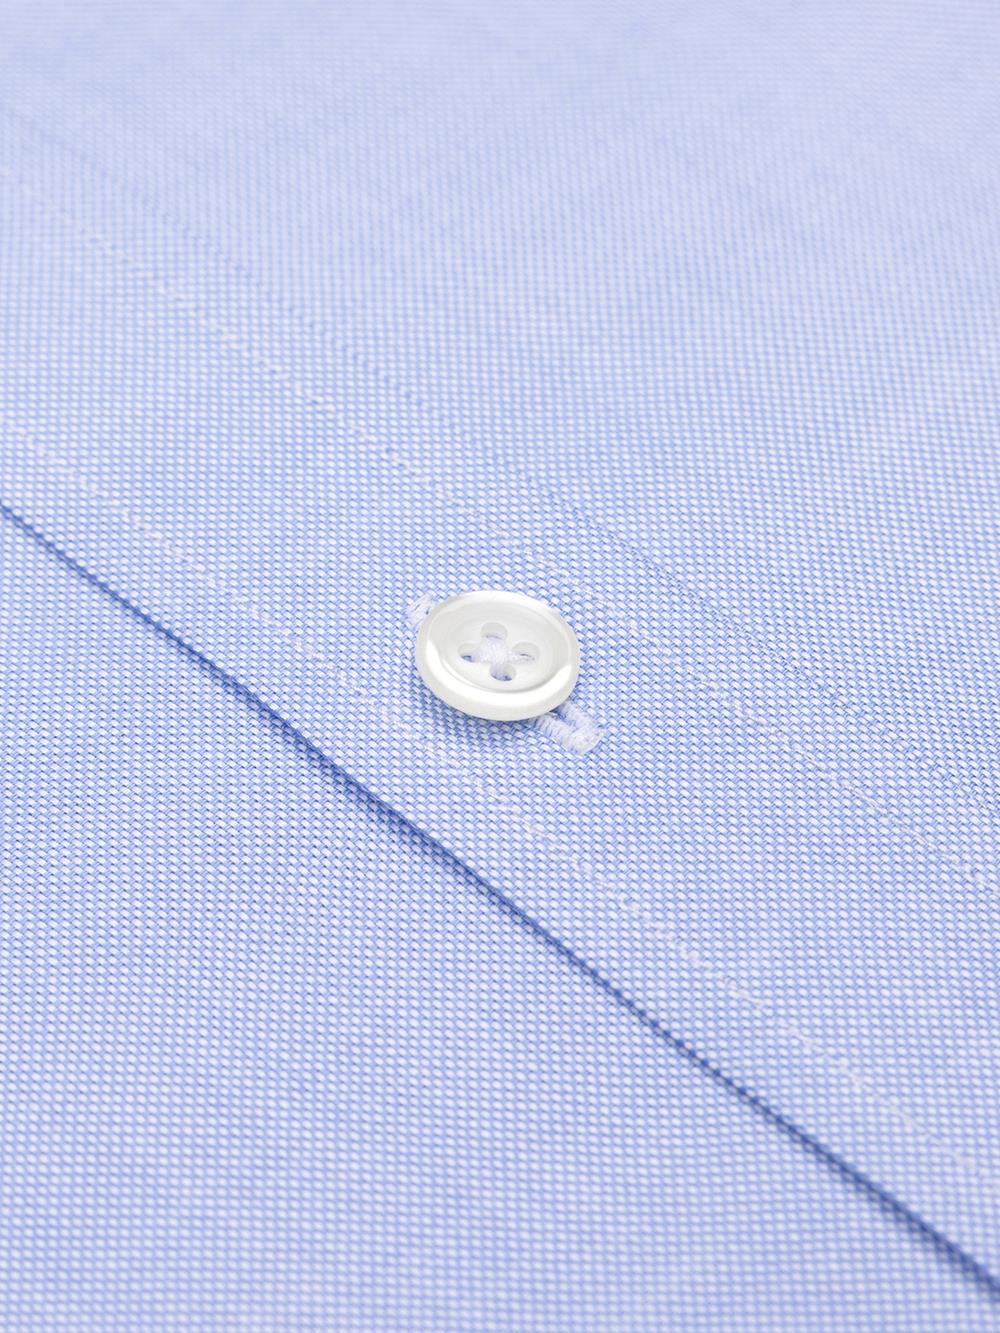 Oxfordhemd himmelblau - Buttondown Kragen